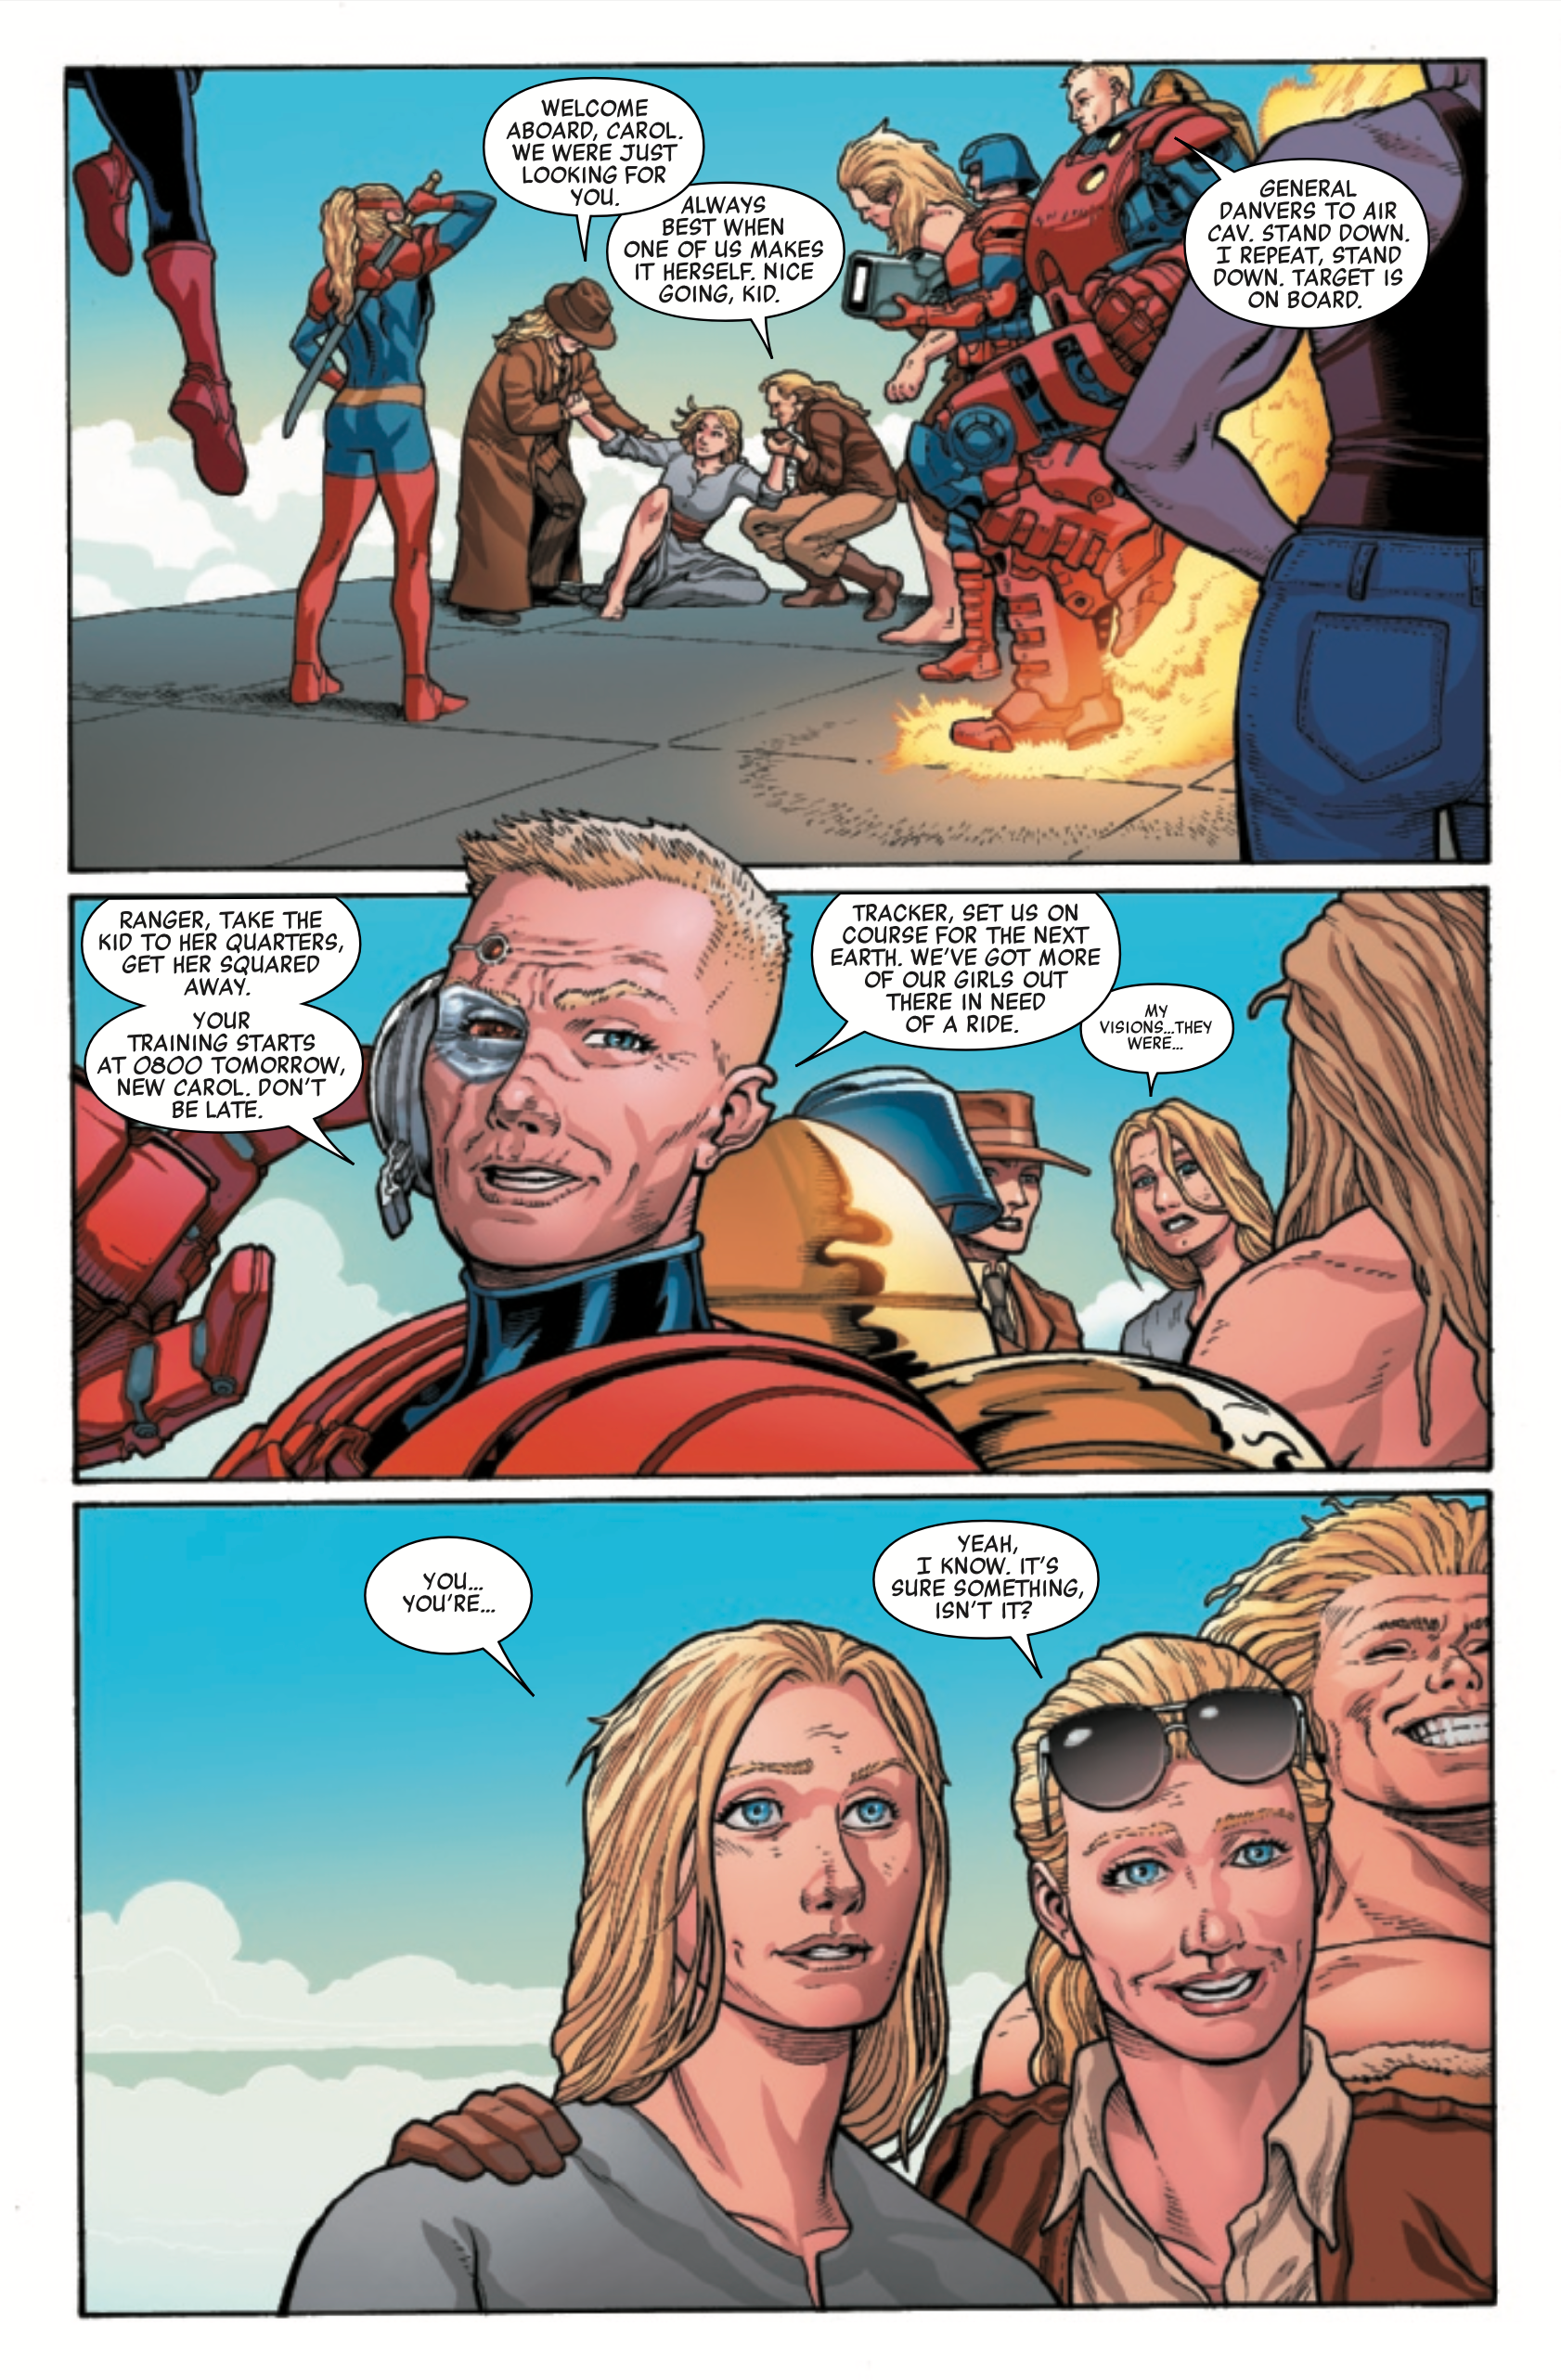 Captain Marvel-Verse in Avengers Forever